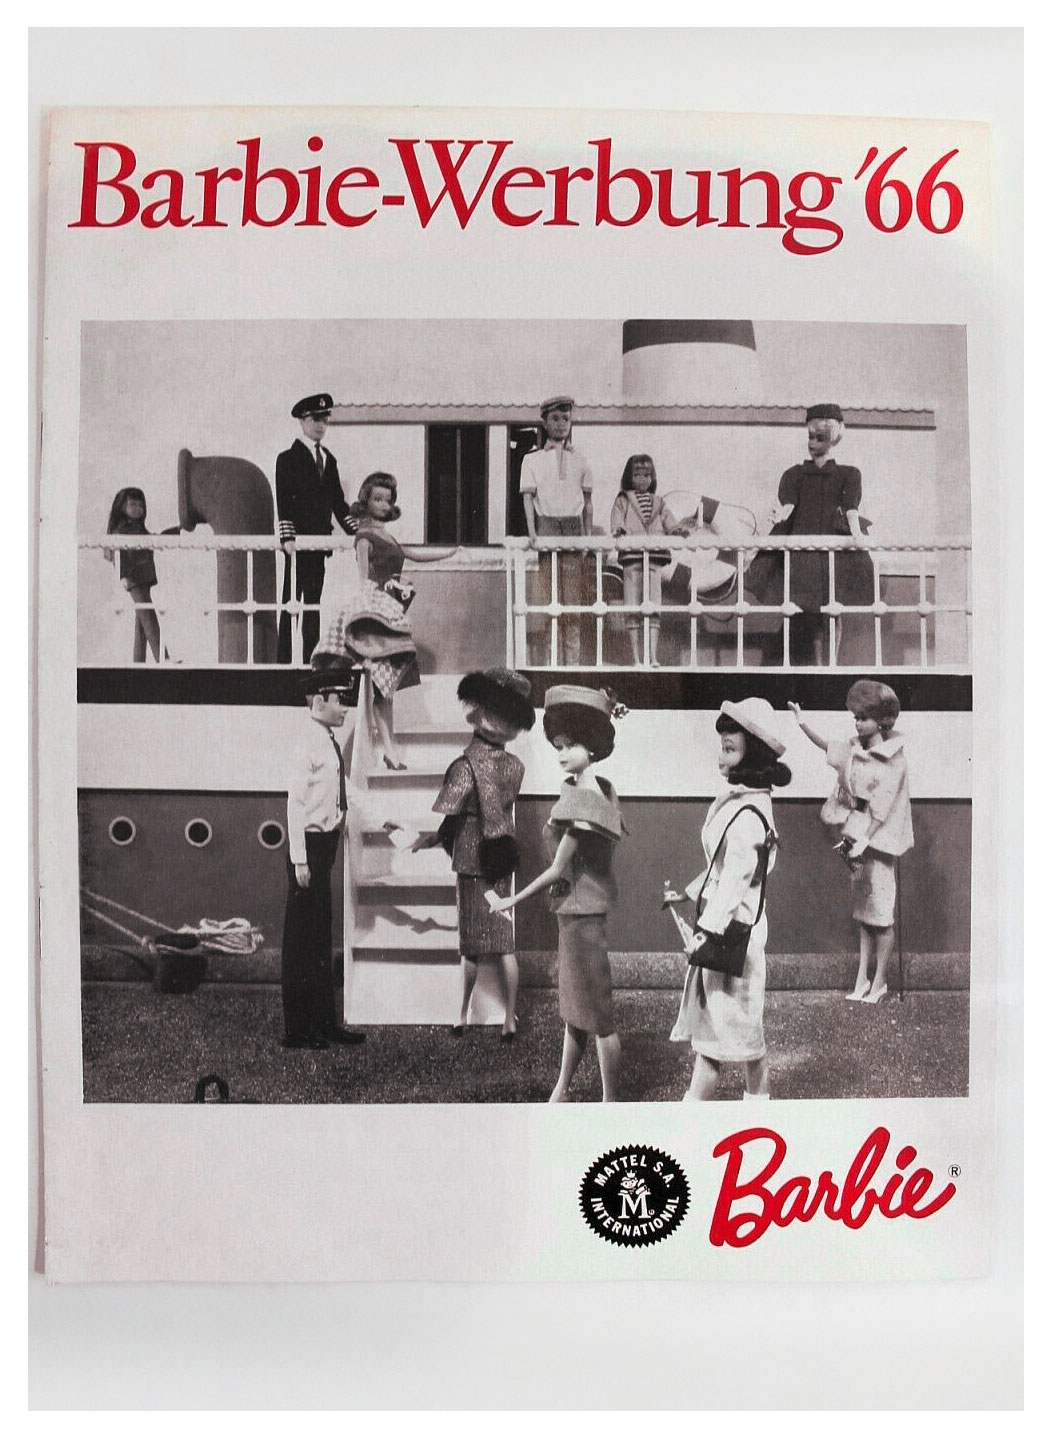 1966 German Barbie Werbung 66 brochure